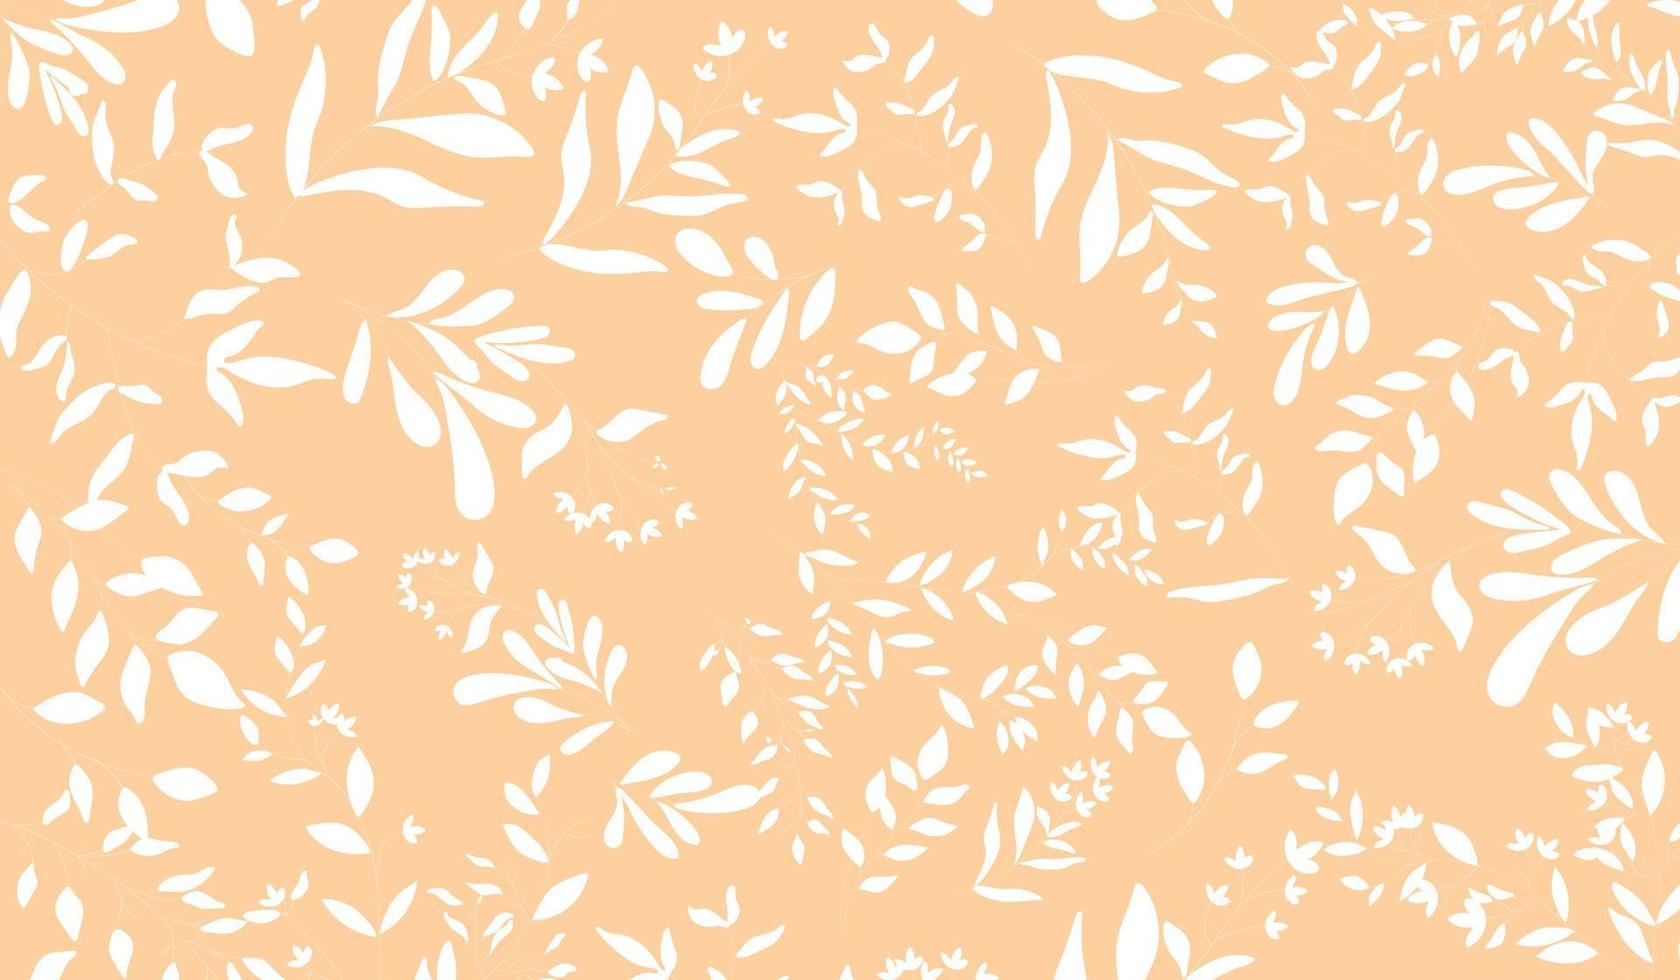 simpatico motivo floreale nel piccolo fiore. stampa ditsy. trama vettoriale senza soluzione di continuità. modello elegante per stampe di moda. stampa con piccoli fiori bianchi. sfondo arancione chiaro.